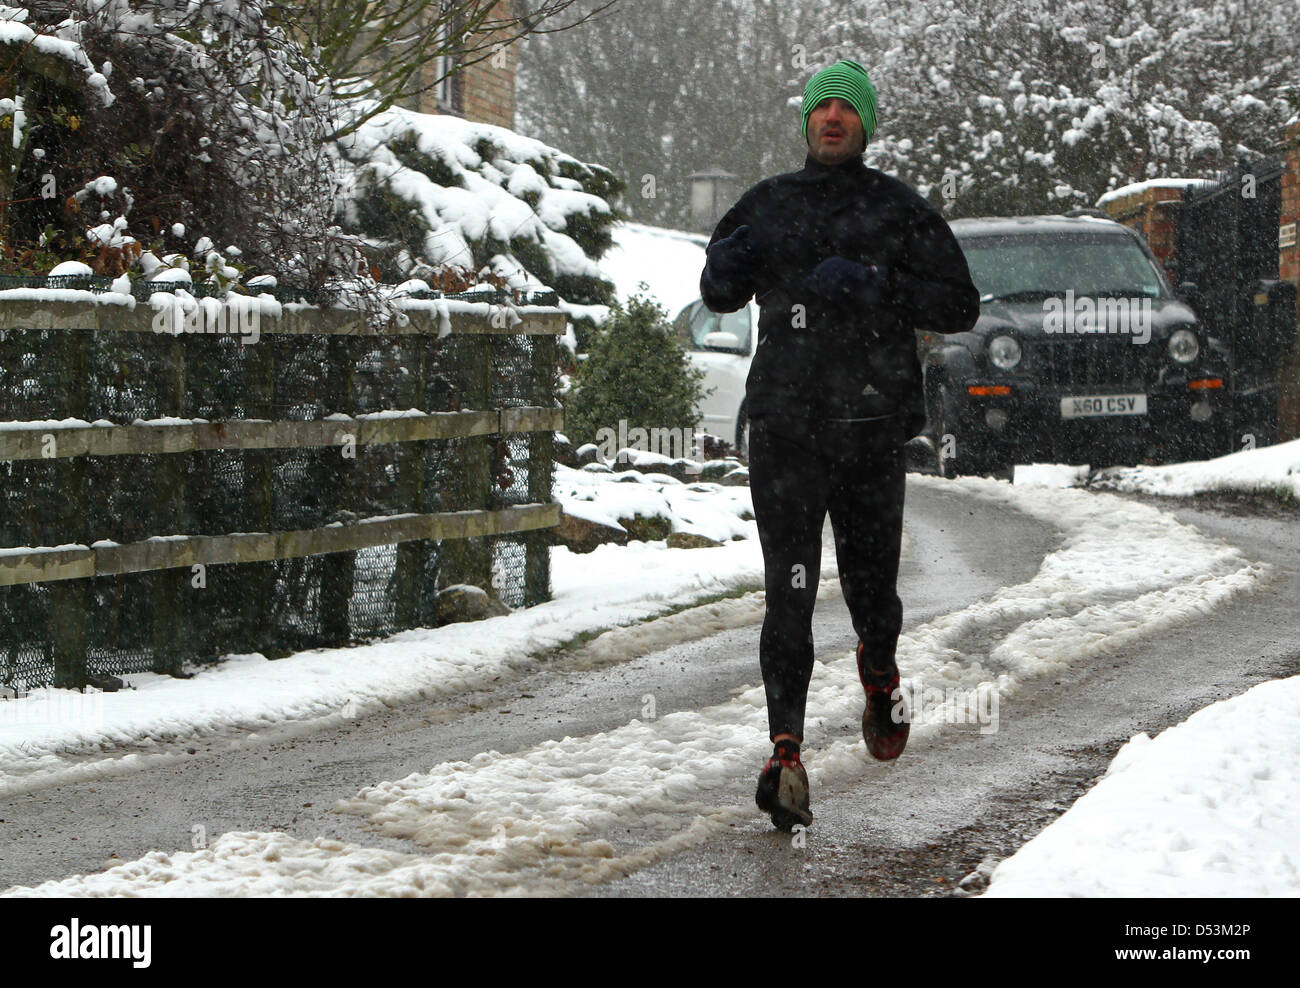 L'eau Grafham, España. 23 mars 2013. Printemps dans son étape. Un runner brave la neige sans précédent une semaine avant Pâques avec une course dans l'eau près de Grafham Cambridgshire. Crédit : Colin Bennett / Alamy Live News Banque D'Images